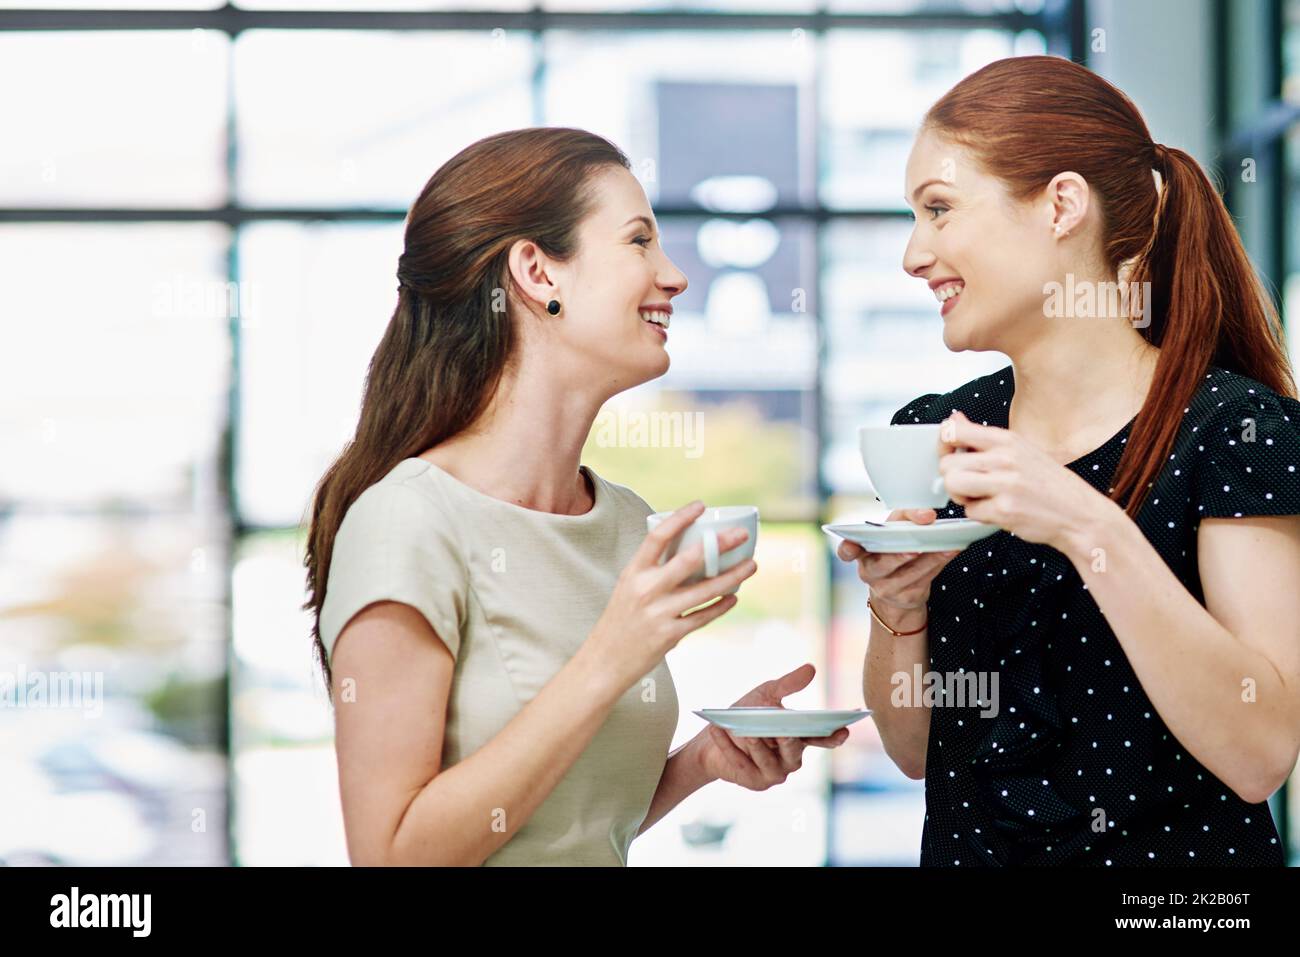 Raccontami tutto sul tuo fine settimana. Scatto corto di due donne d'affari in piedi e chiacchierando durante una pausa caffè. Foto Stock